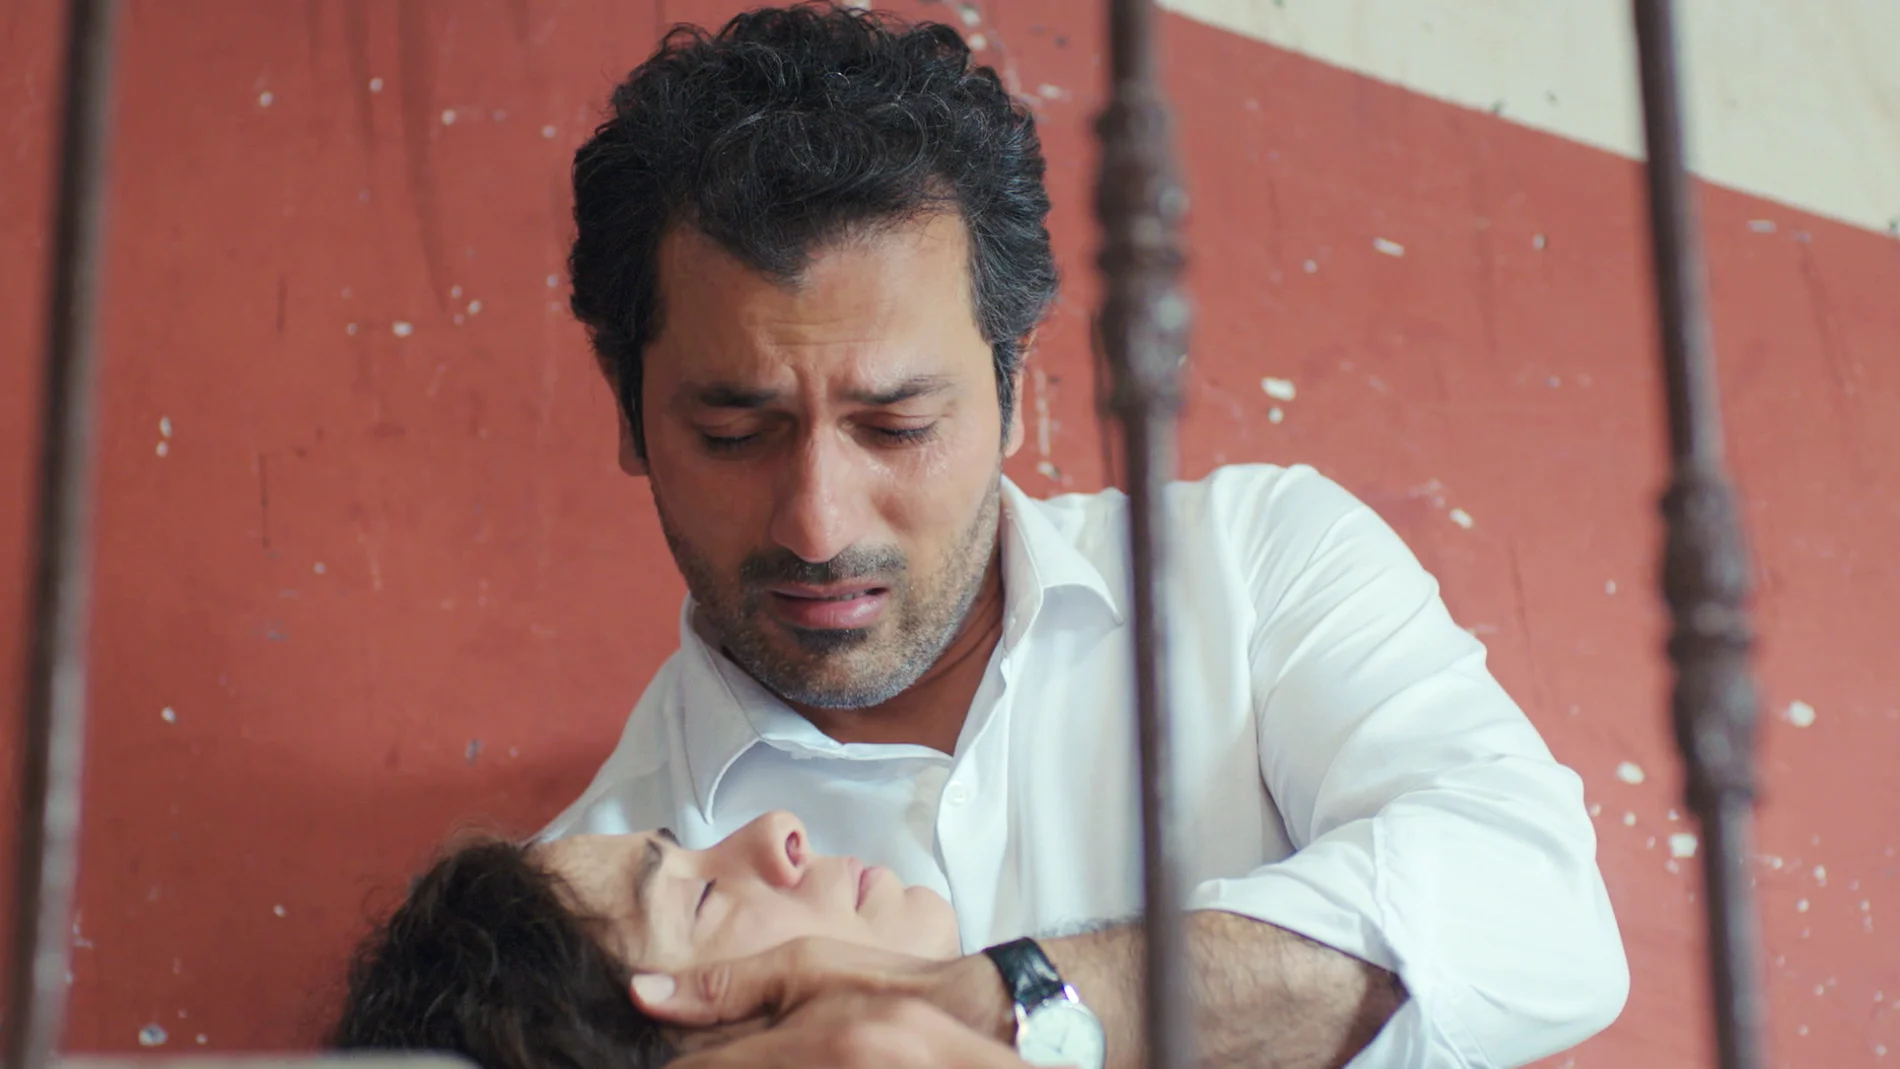 Lágrimas de miedo: Arif descubre a Bahar inconsciente y siente el temor de perderla para siempre